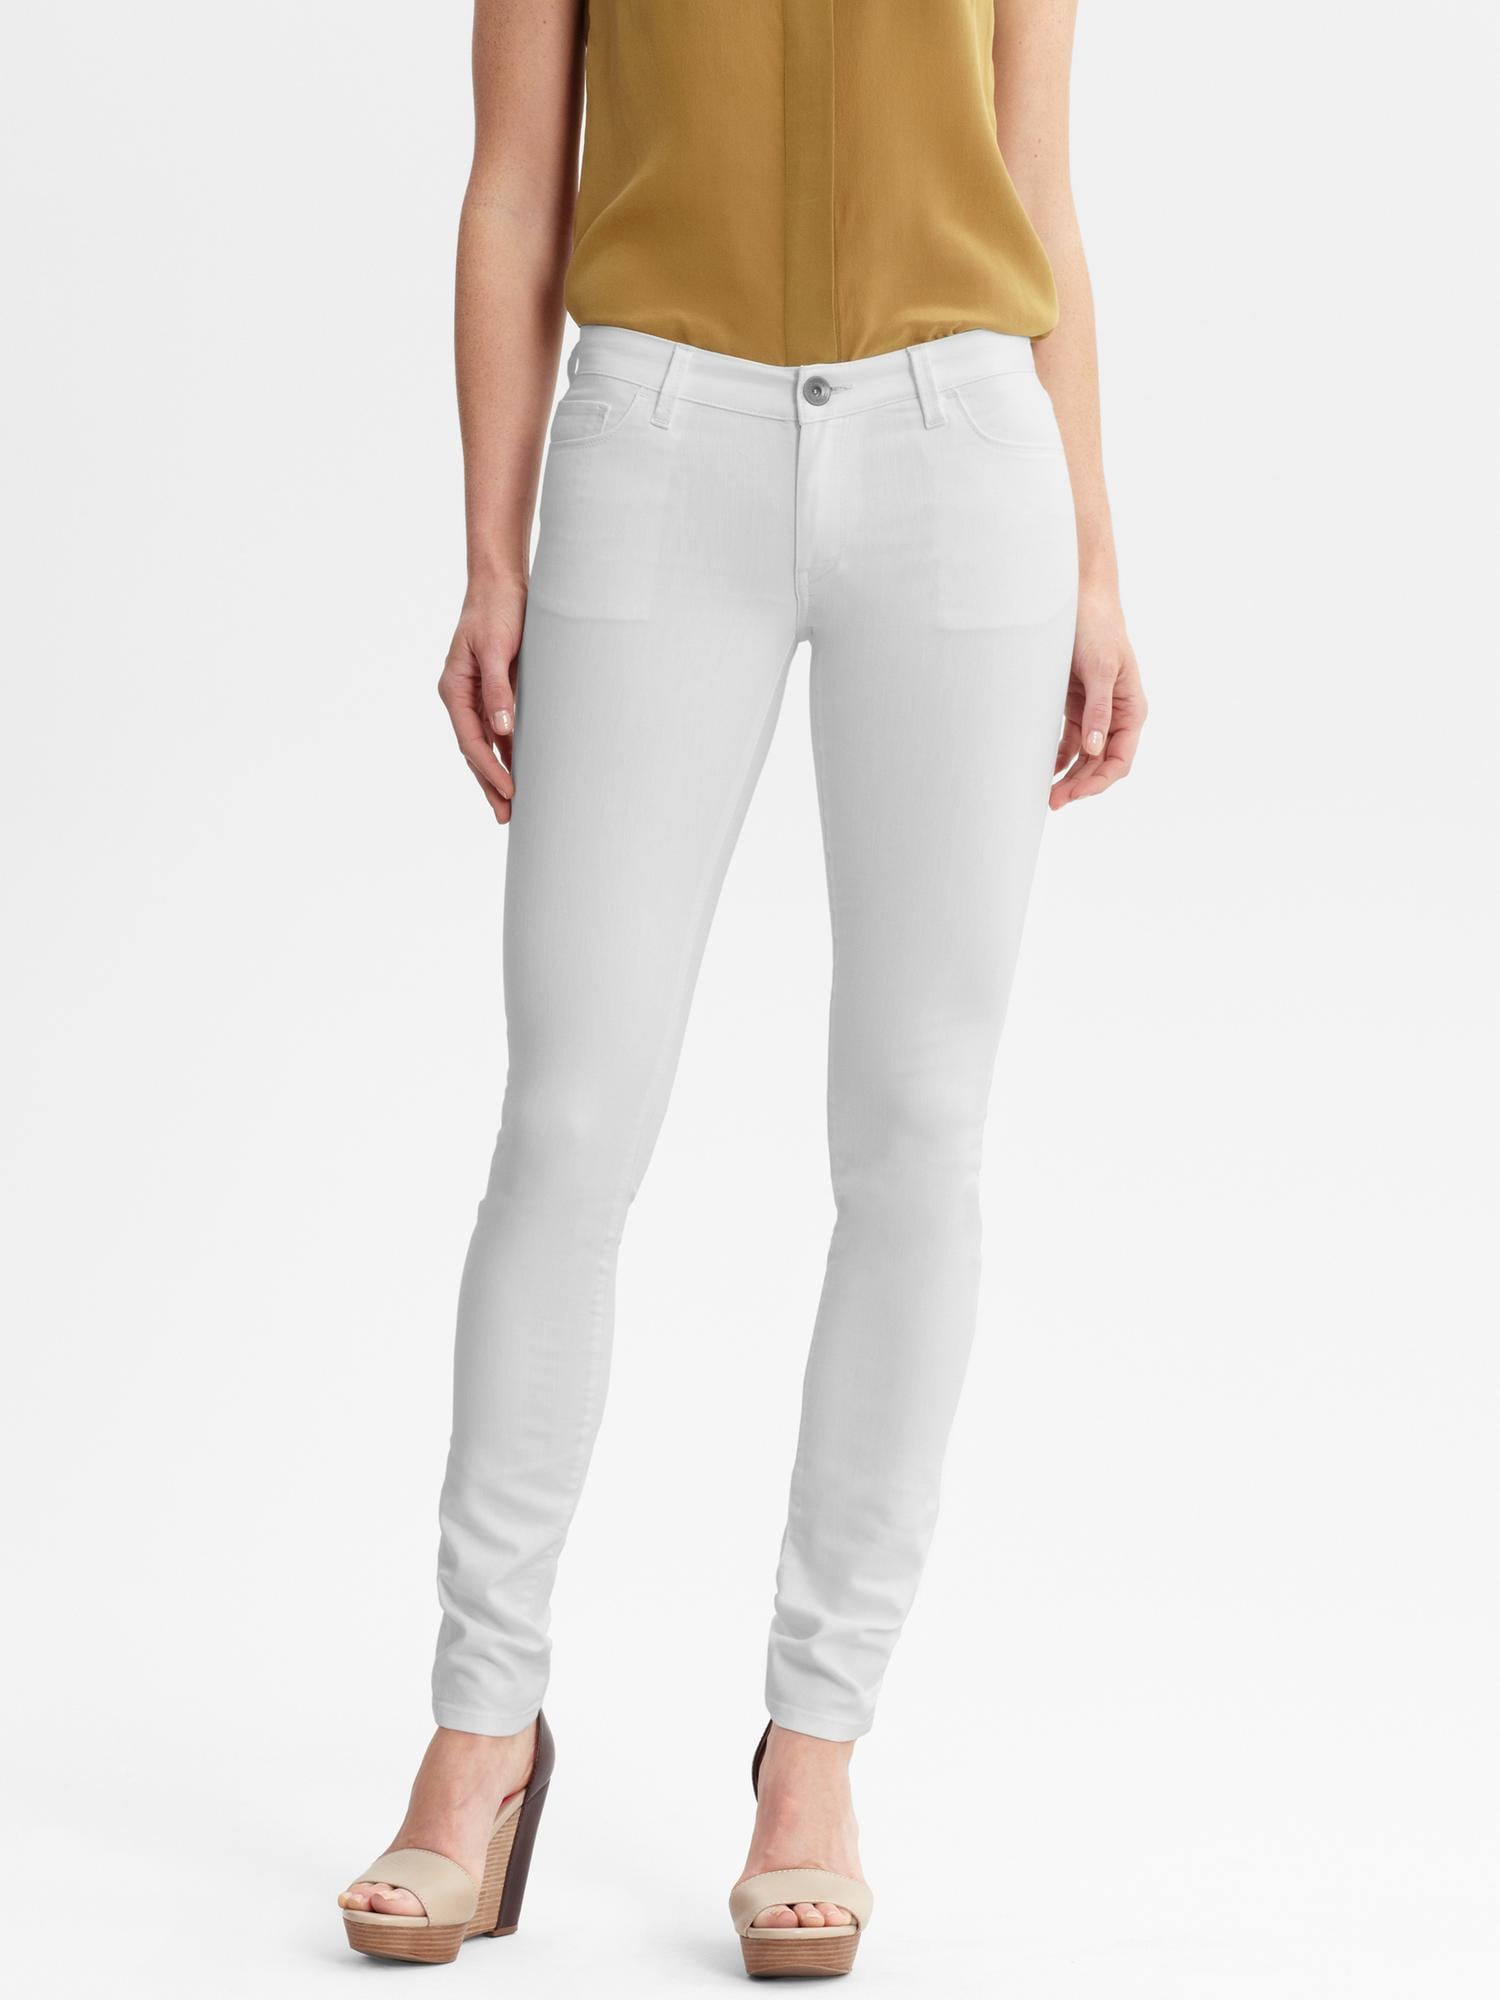 White skinny legging jean